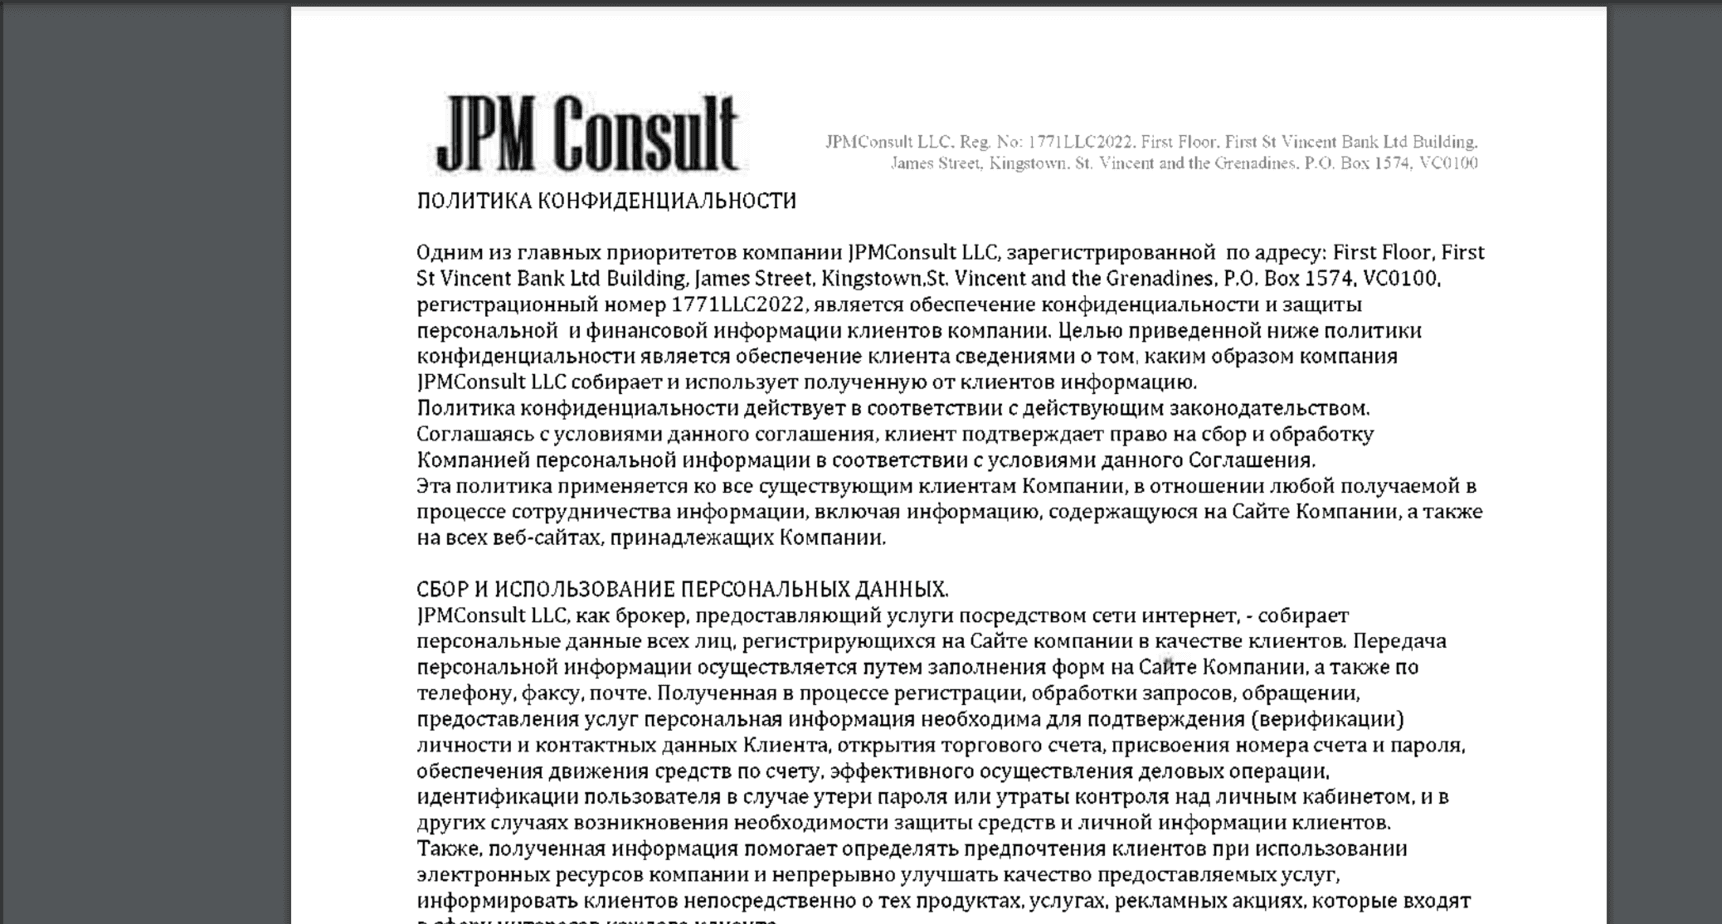 JPM CONSULT - отзывы и обзор компании